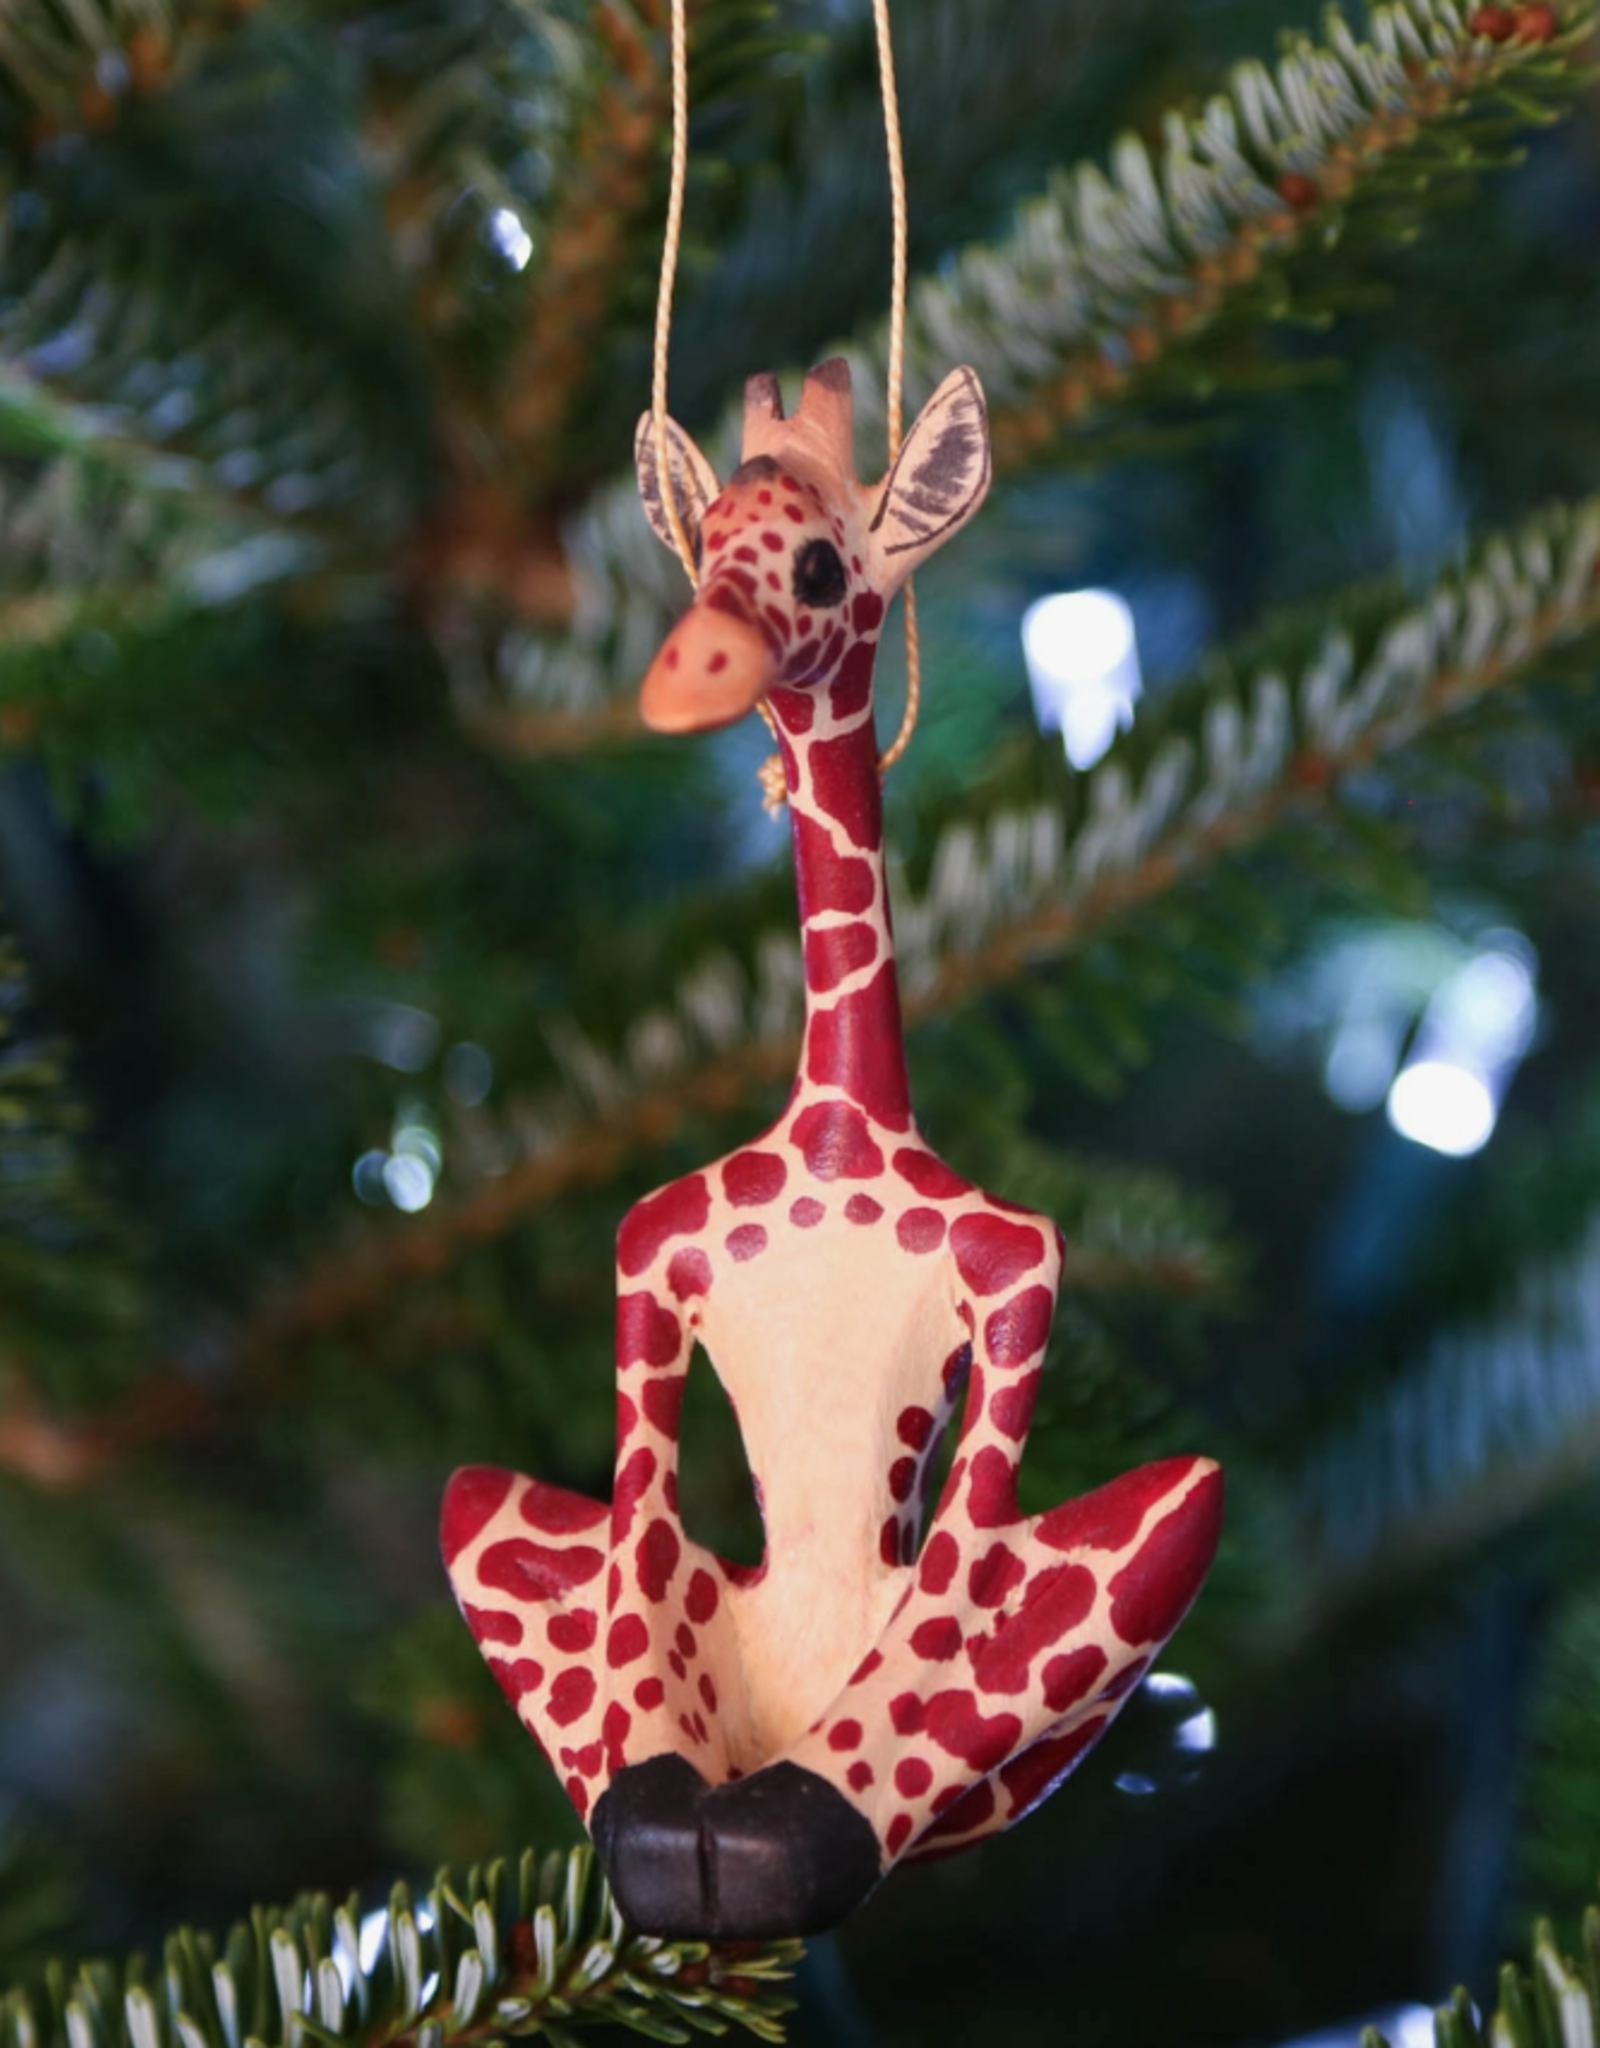 Ten Thousand Villages Yoga Giraffe Ornament